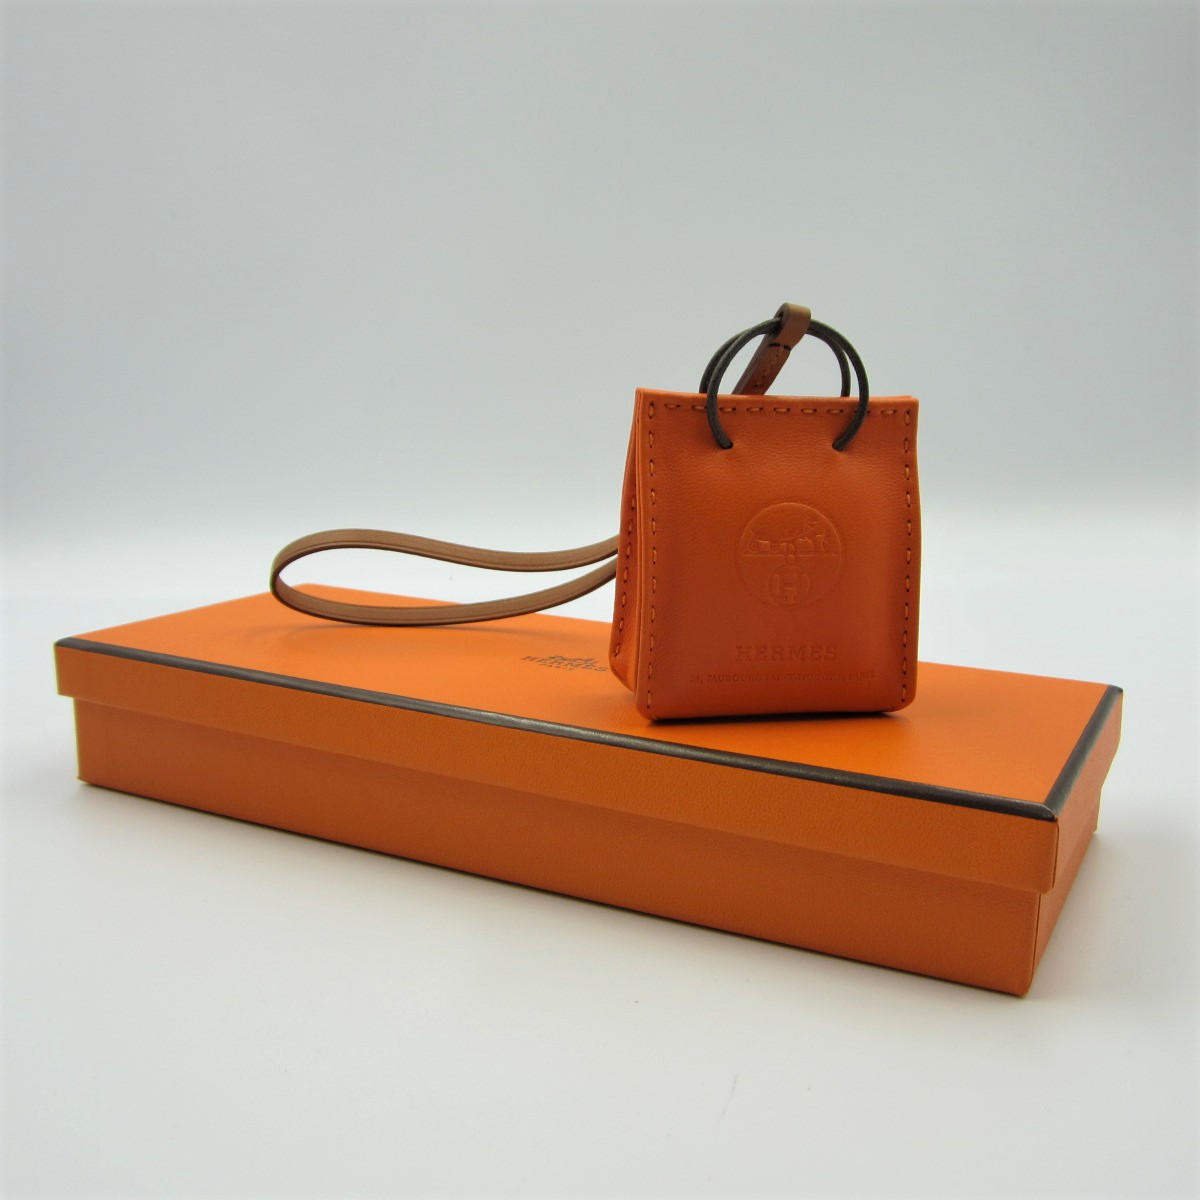 限定製作 エルメス サックオランジュ(B) オレンジ 紙袋型 バッグ